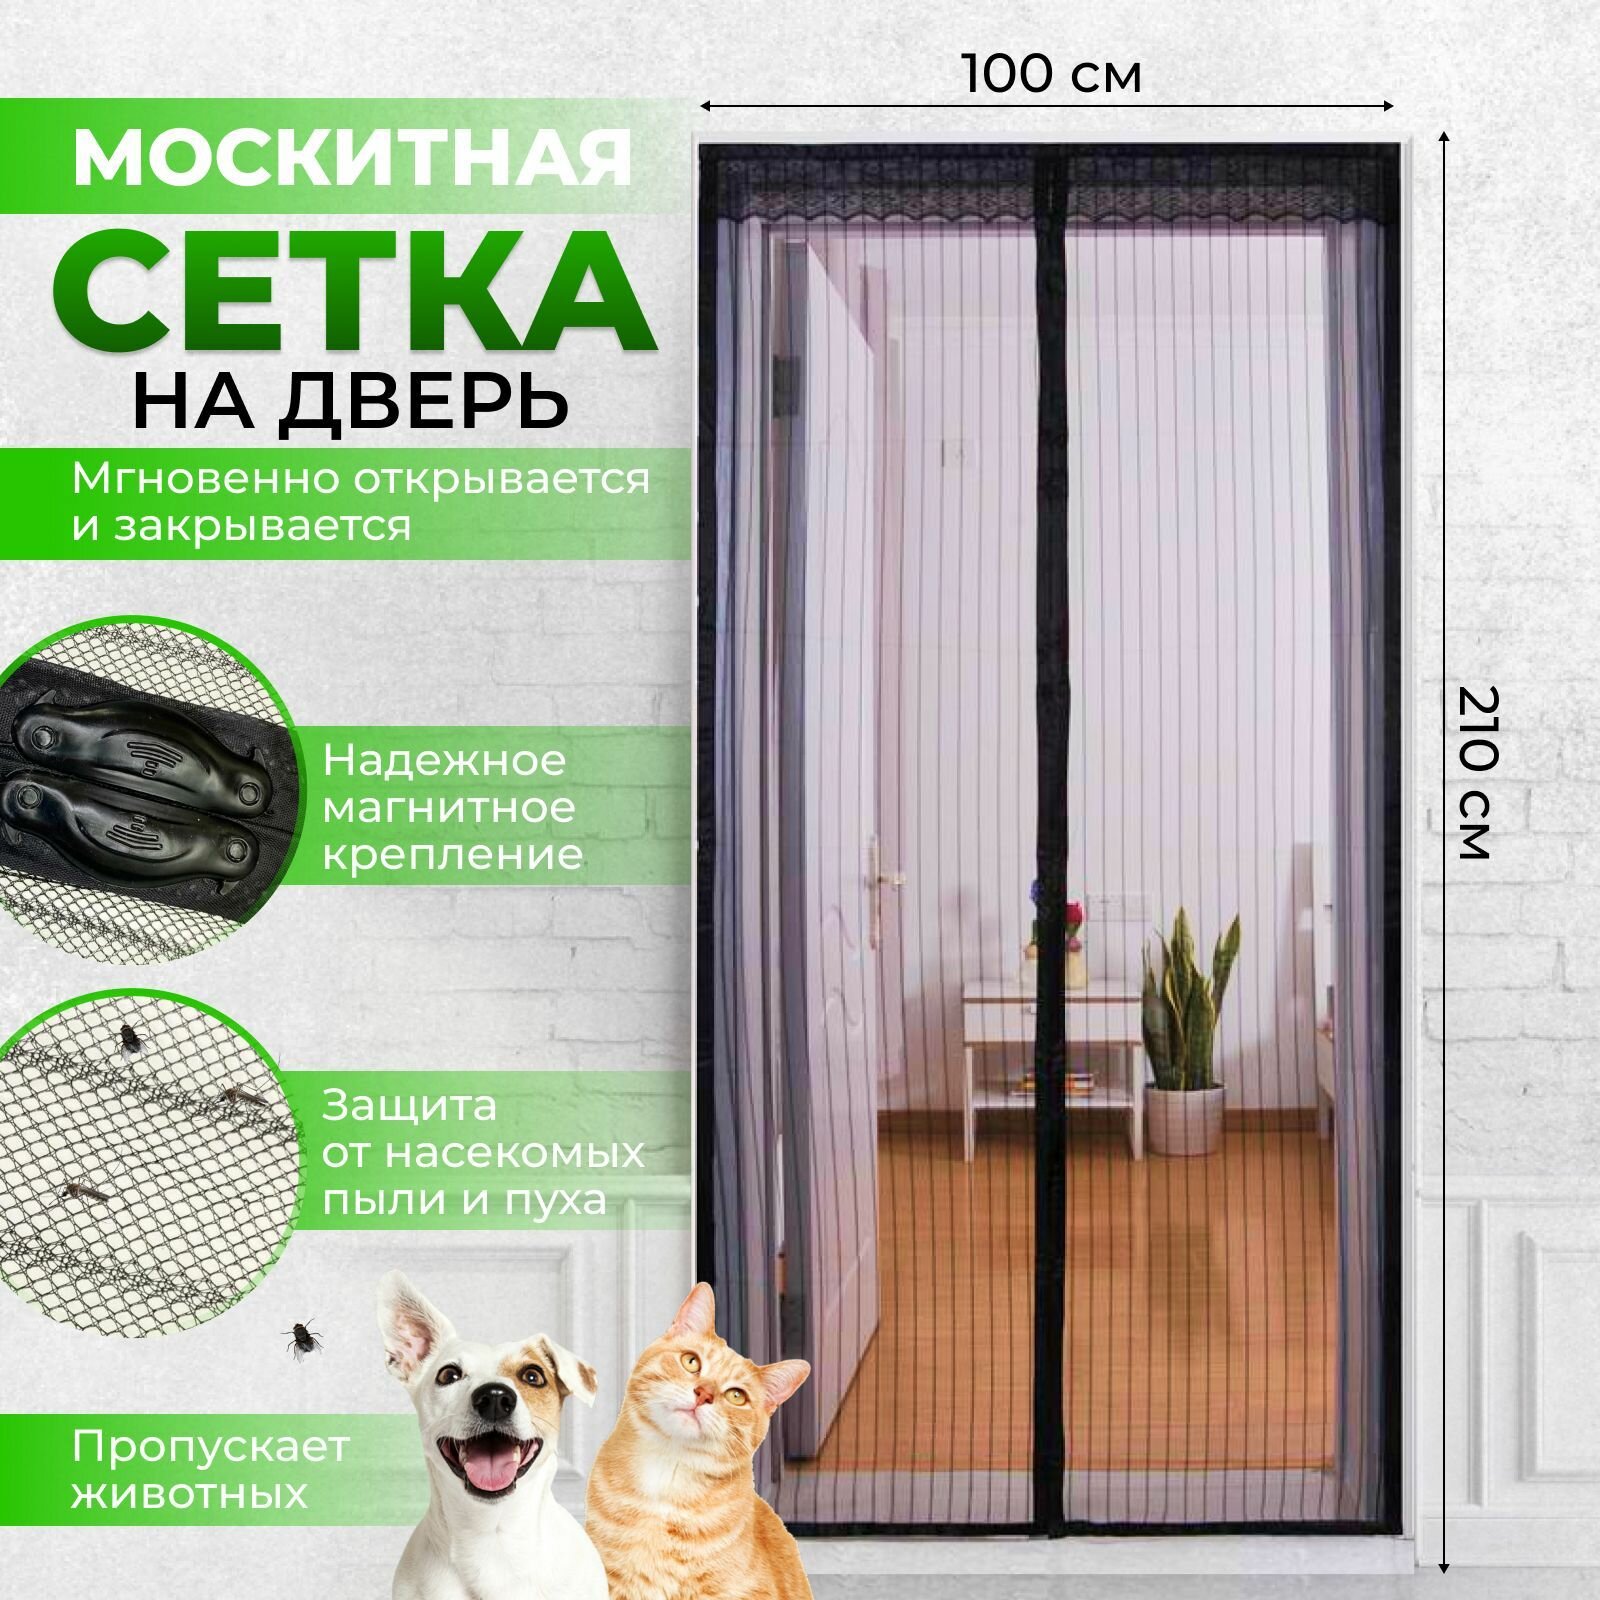 Москитная сетка на дверь на магнитах антимоскитная дверная сетка от комаров с крепежной лентой 100х210 см черная